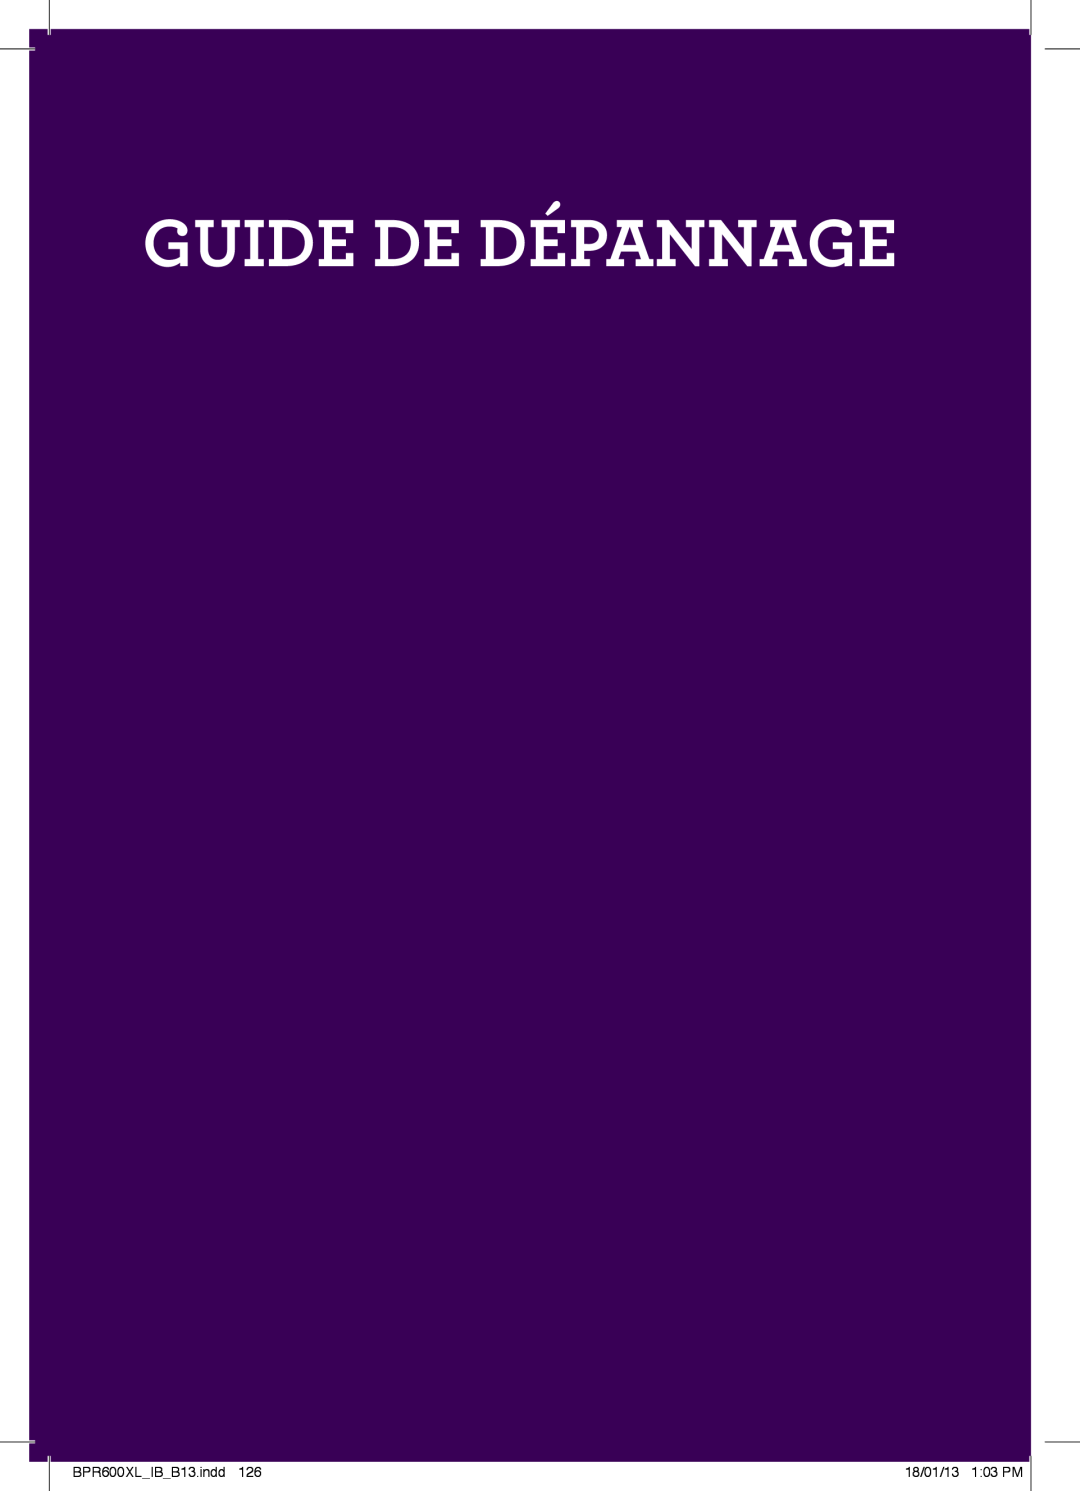 Breville manual Guide De Dépannage, BPR600XLIBB13.indd, 18/01/13 103 PM 